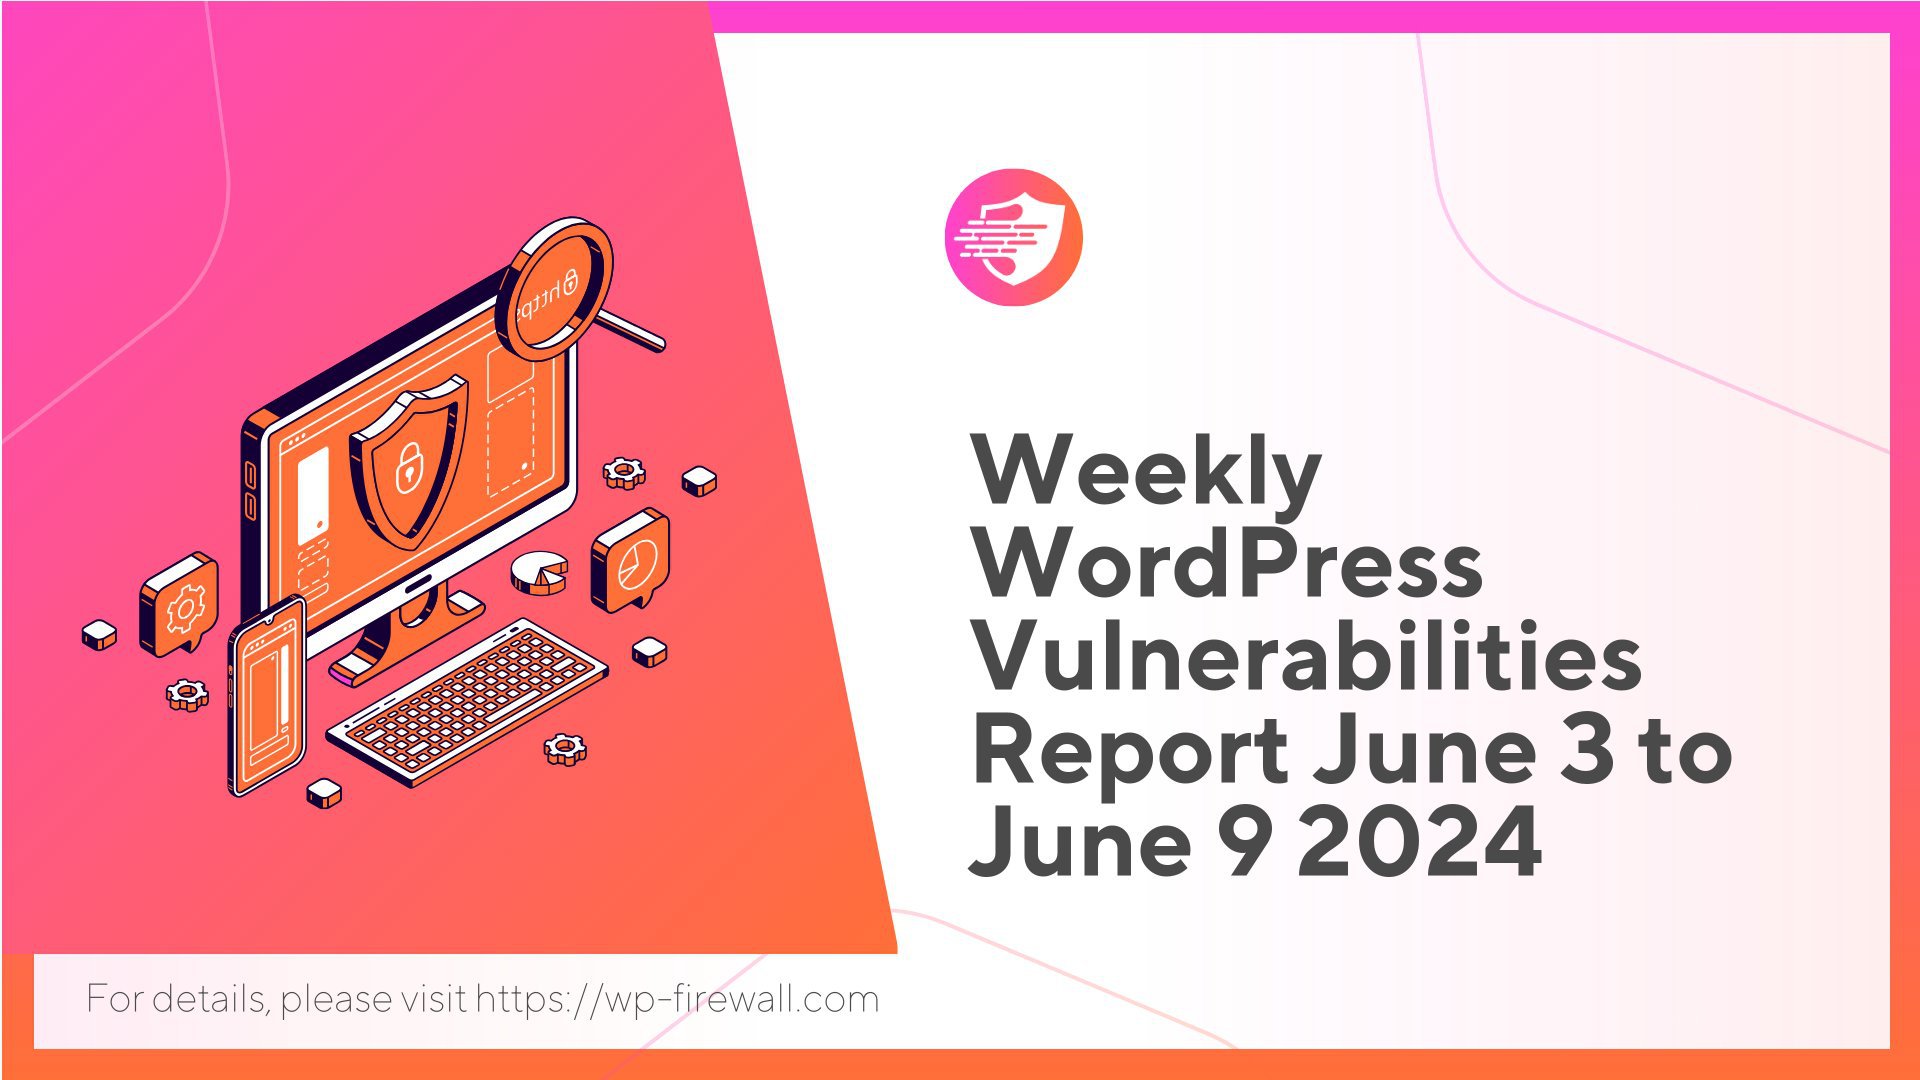 Weekly WordPress Vulnerabilities Report June 3 to June 9 2024 cover